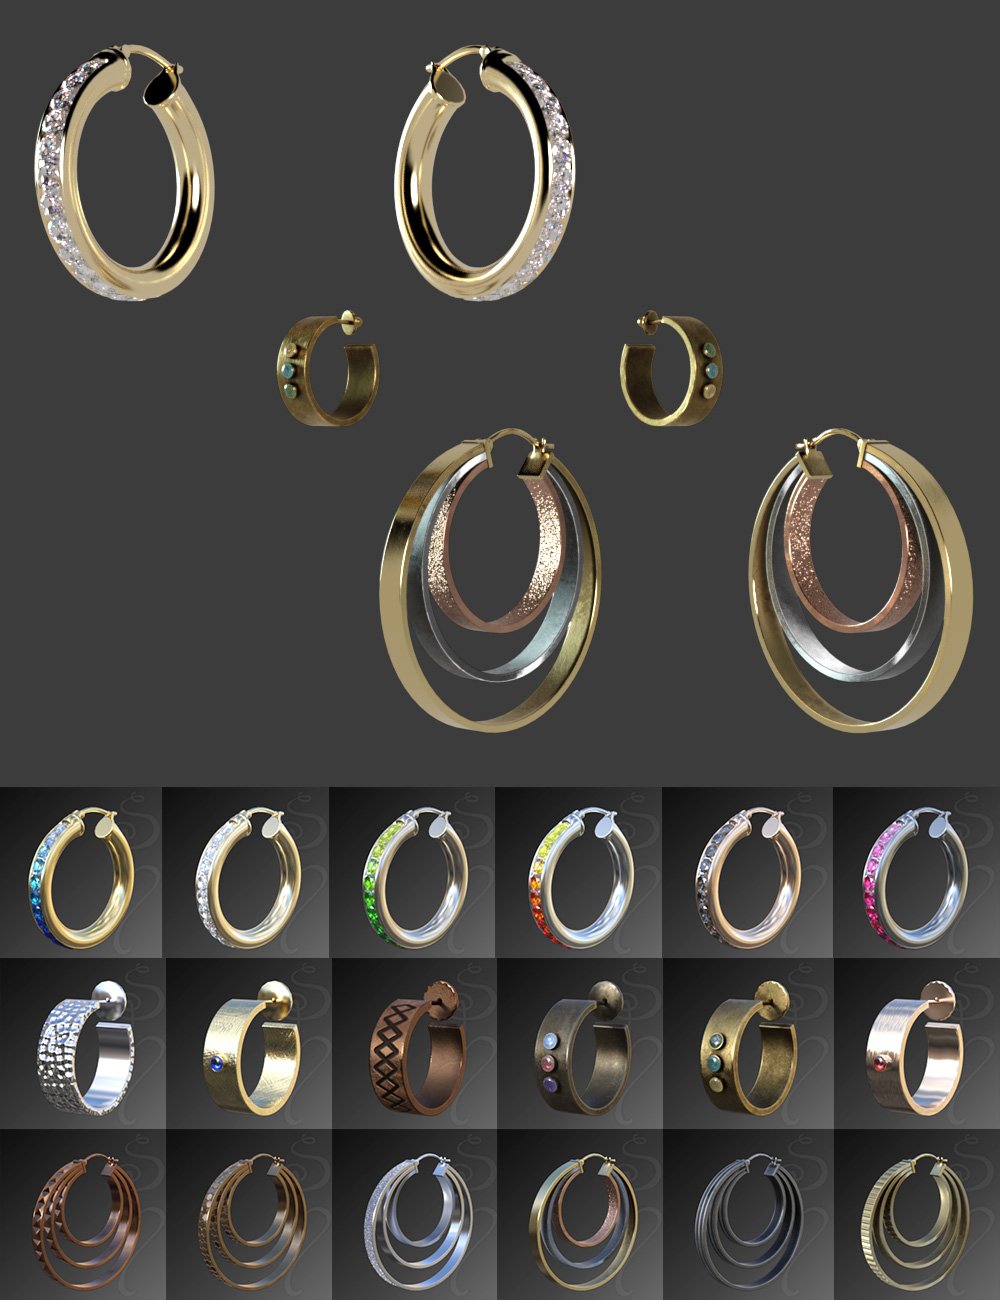 Hoop Earrings Modern Style for Genesis 8 and 8.1 Females